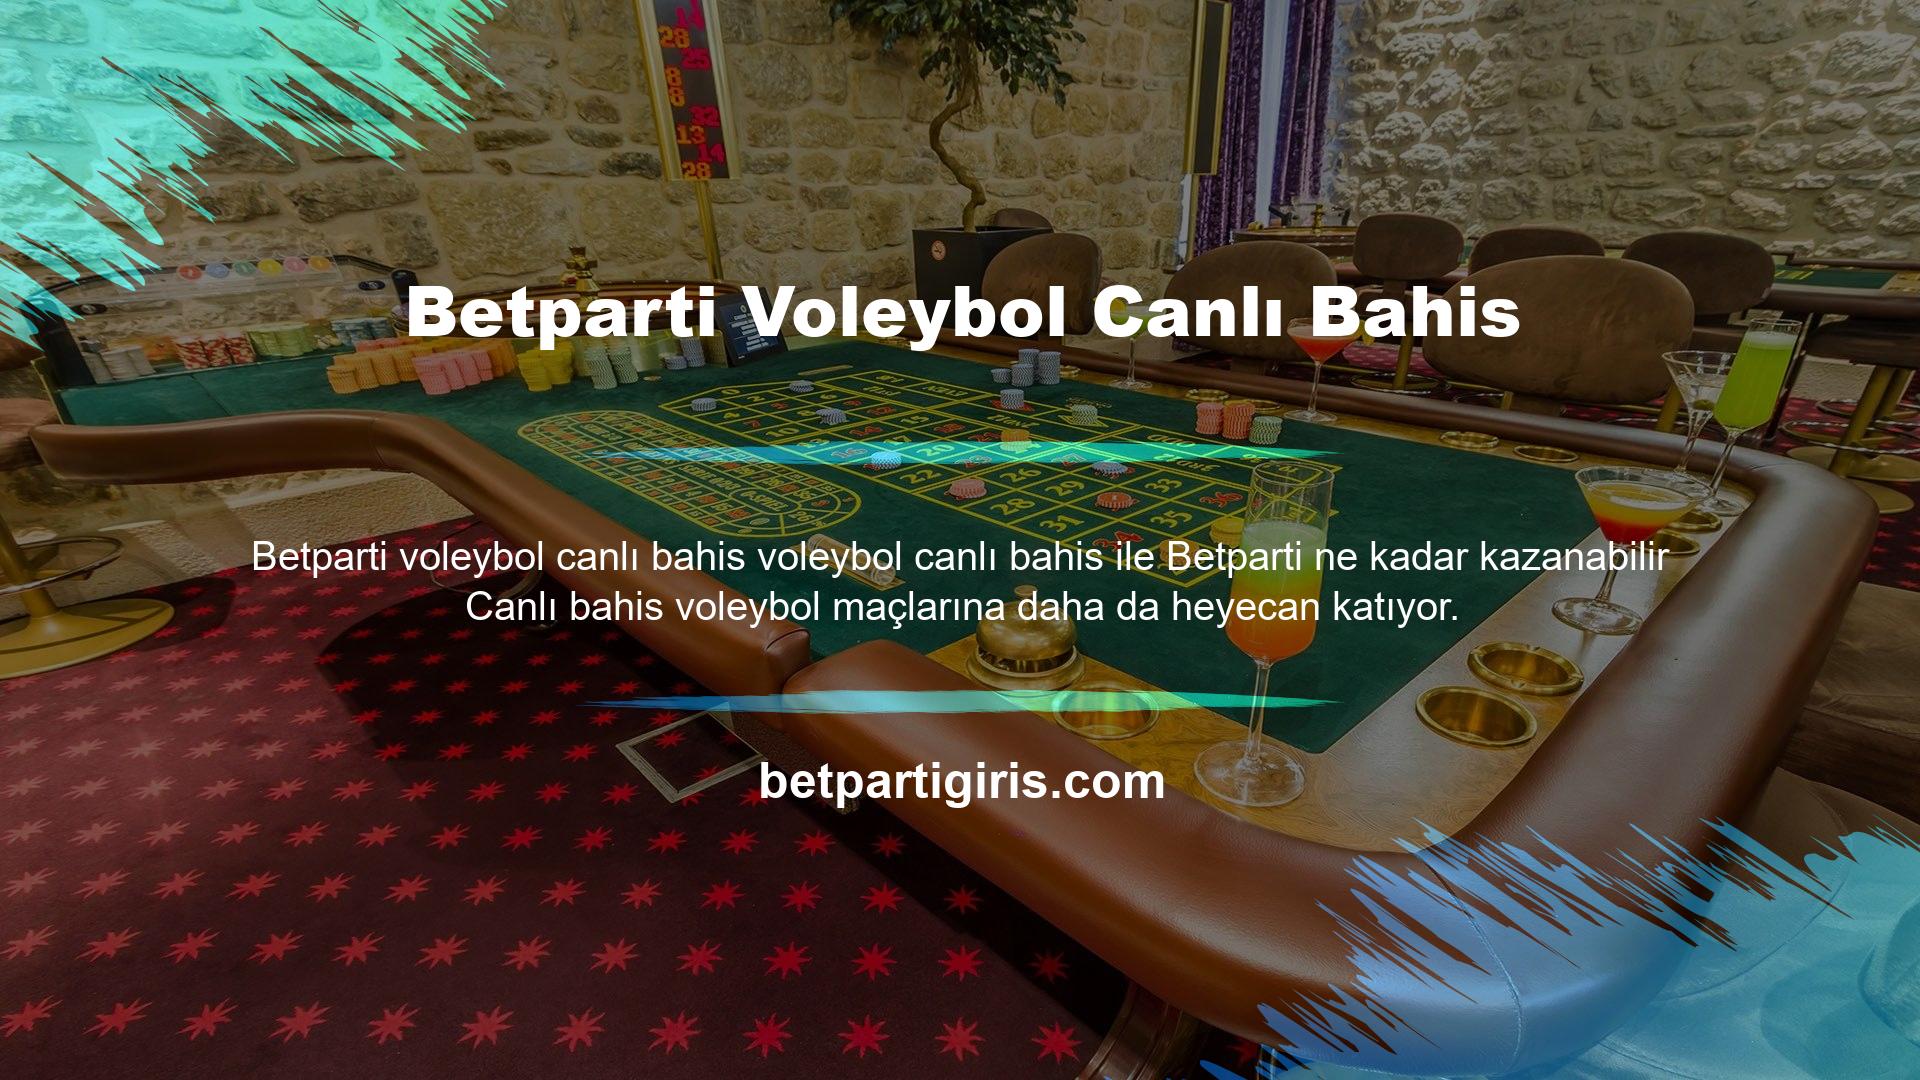 Canlı bahislerde Betparti Volley'in kazanma oranı canlı voleybol bahislerinde sabit değildir